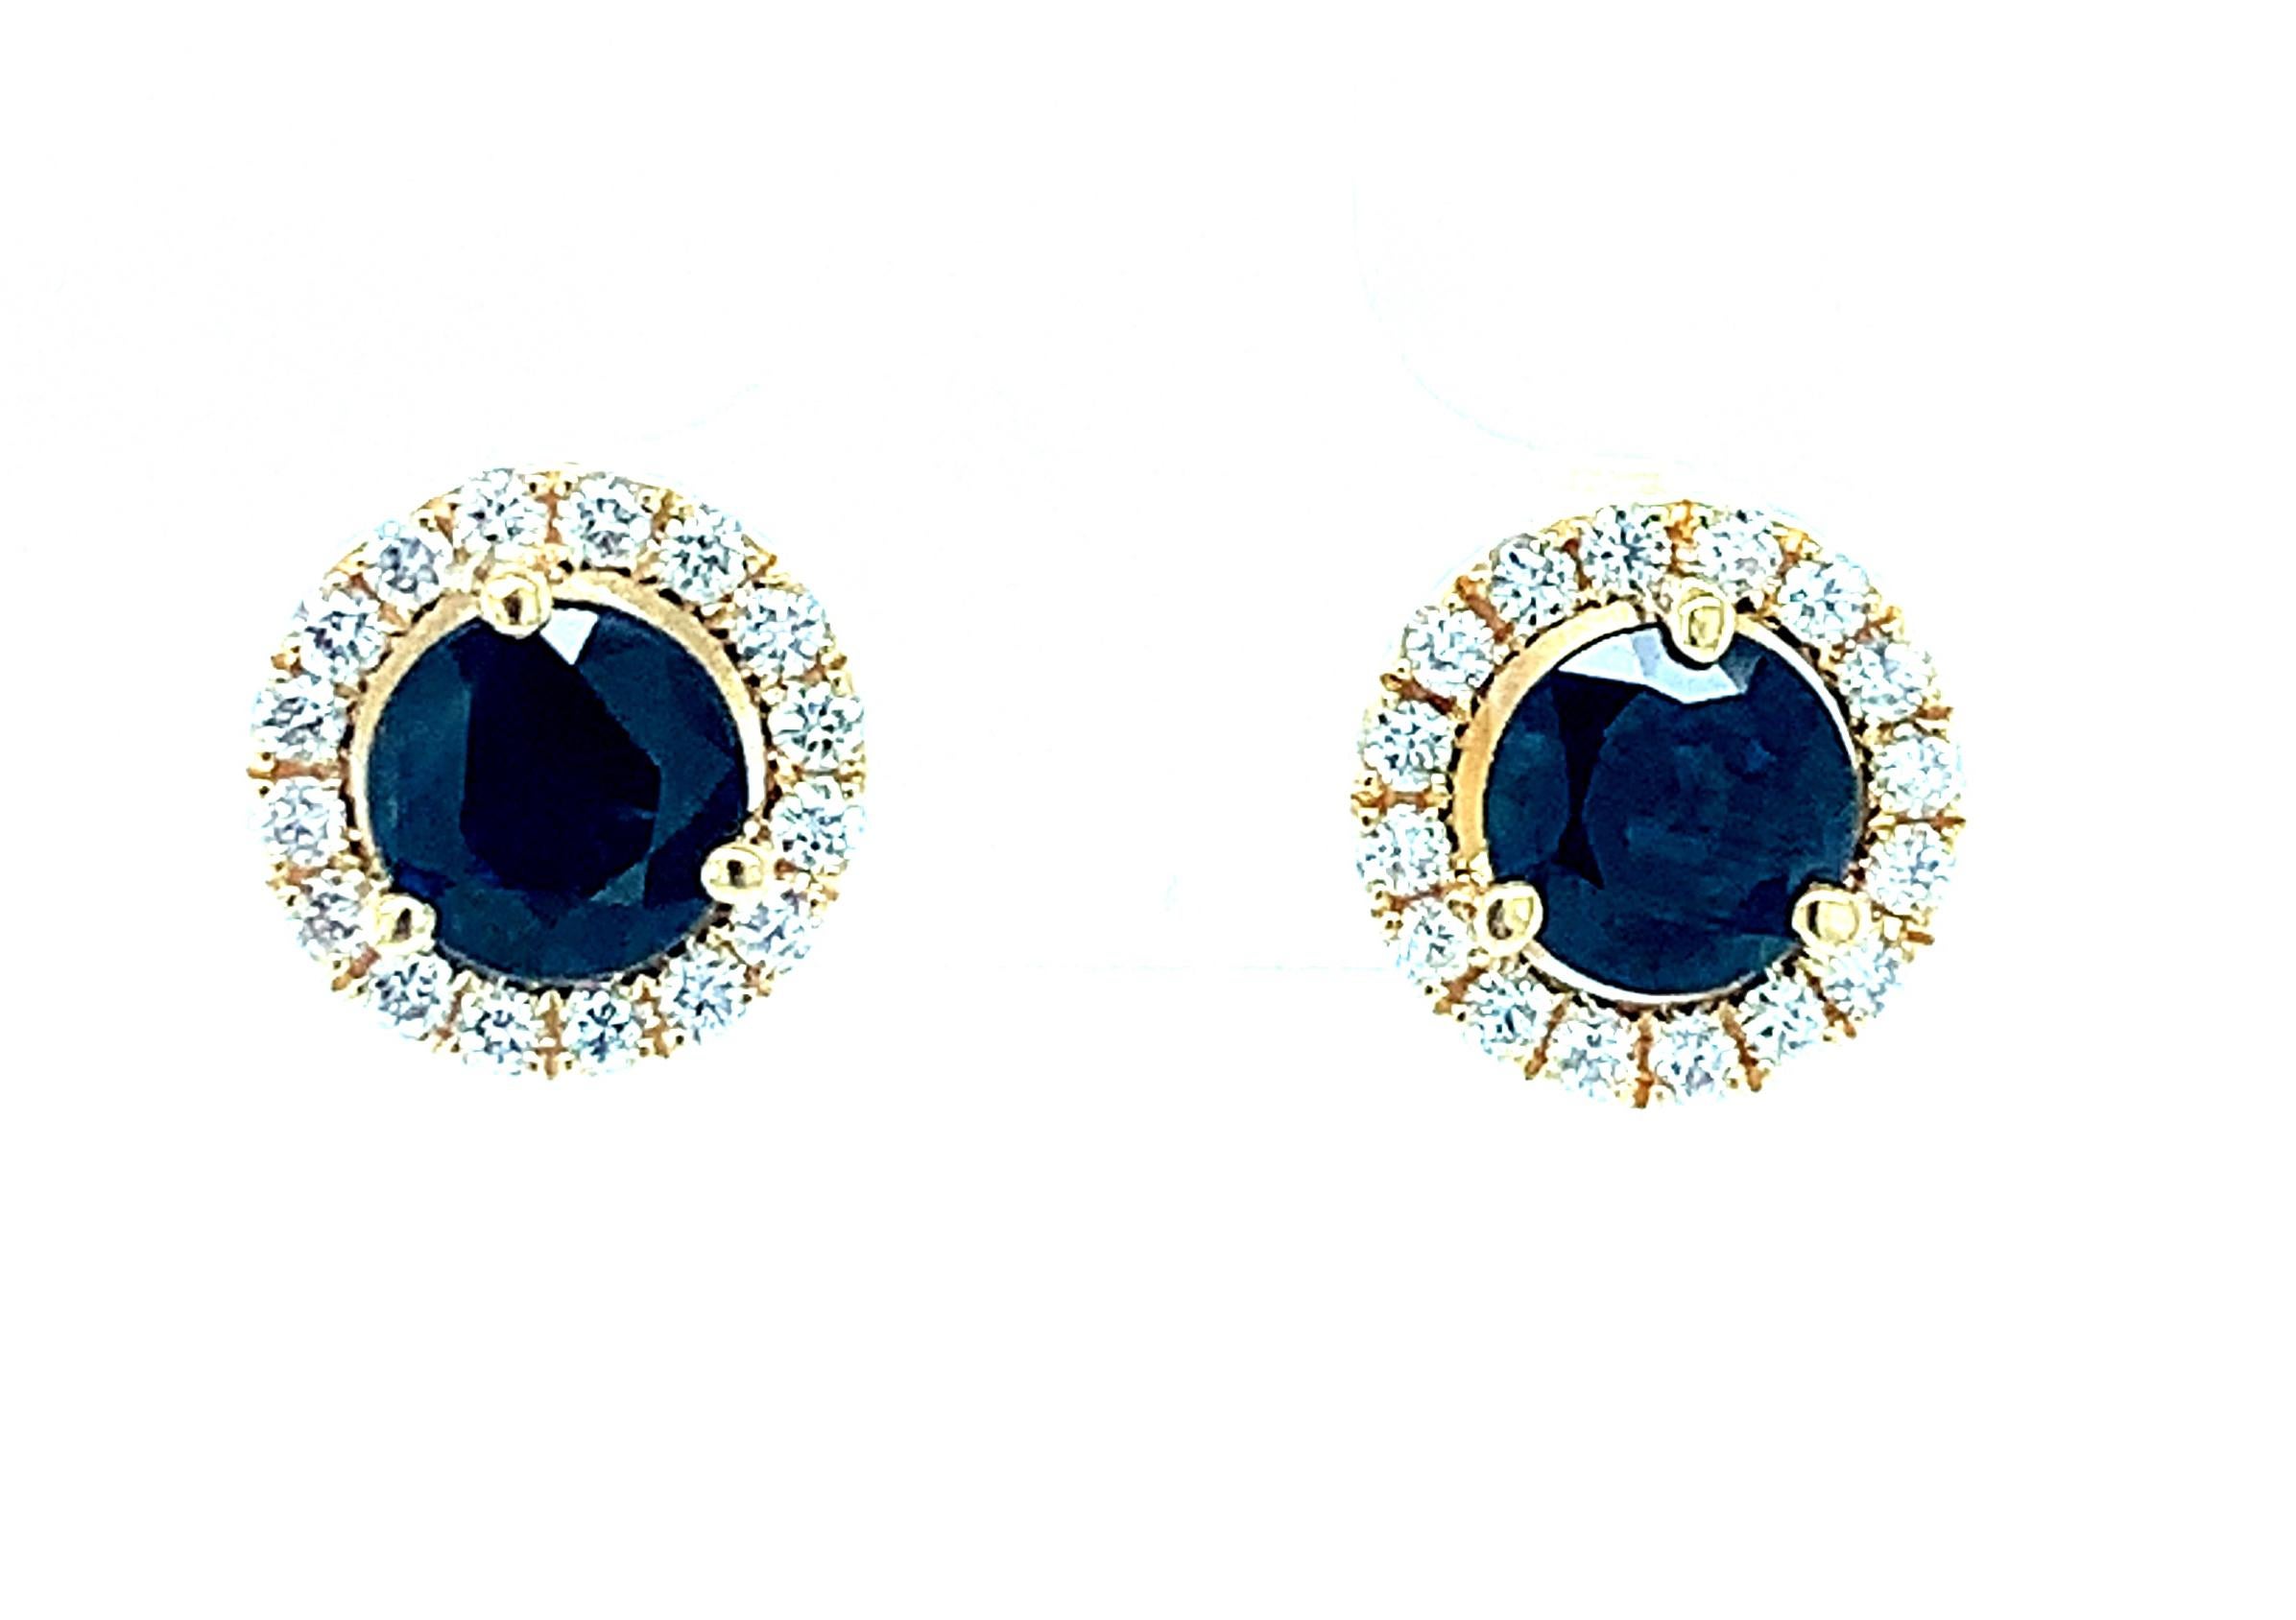 Diese prächtigen, tiefblauen Saphir-Ohrstecker sind ein Muss! Zwei blaue Saphire sind von einem Halo aus funkelnden, runden Diamanten im Brillantschliff umgeben. Handgefertigt von unseren Meisterjuwelieren in Los Angeles aus 18 Karat Gelbgold. Die